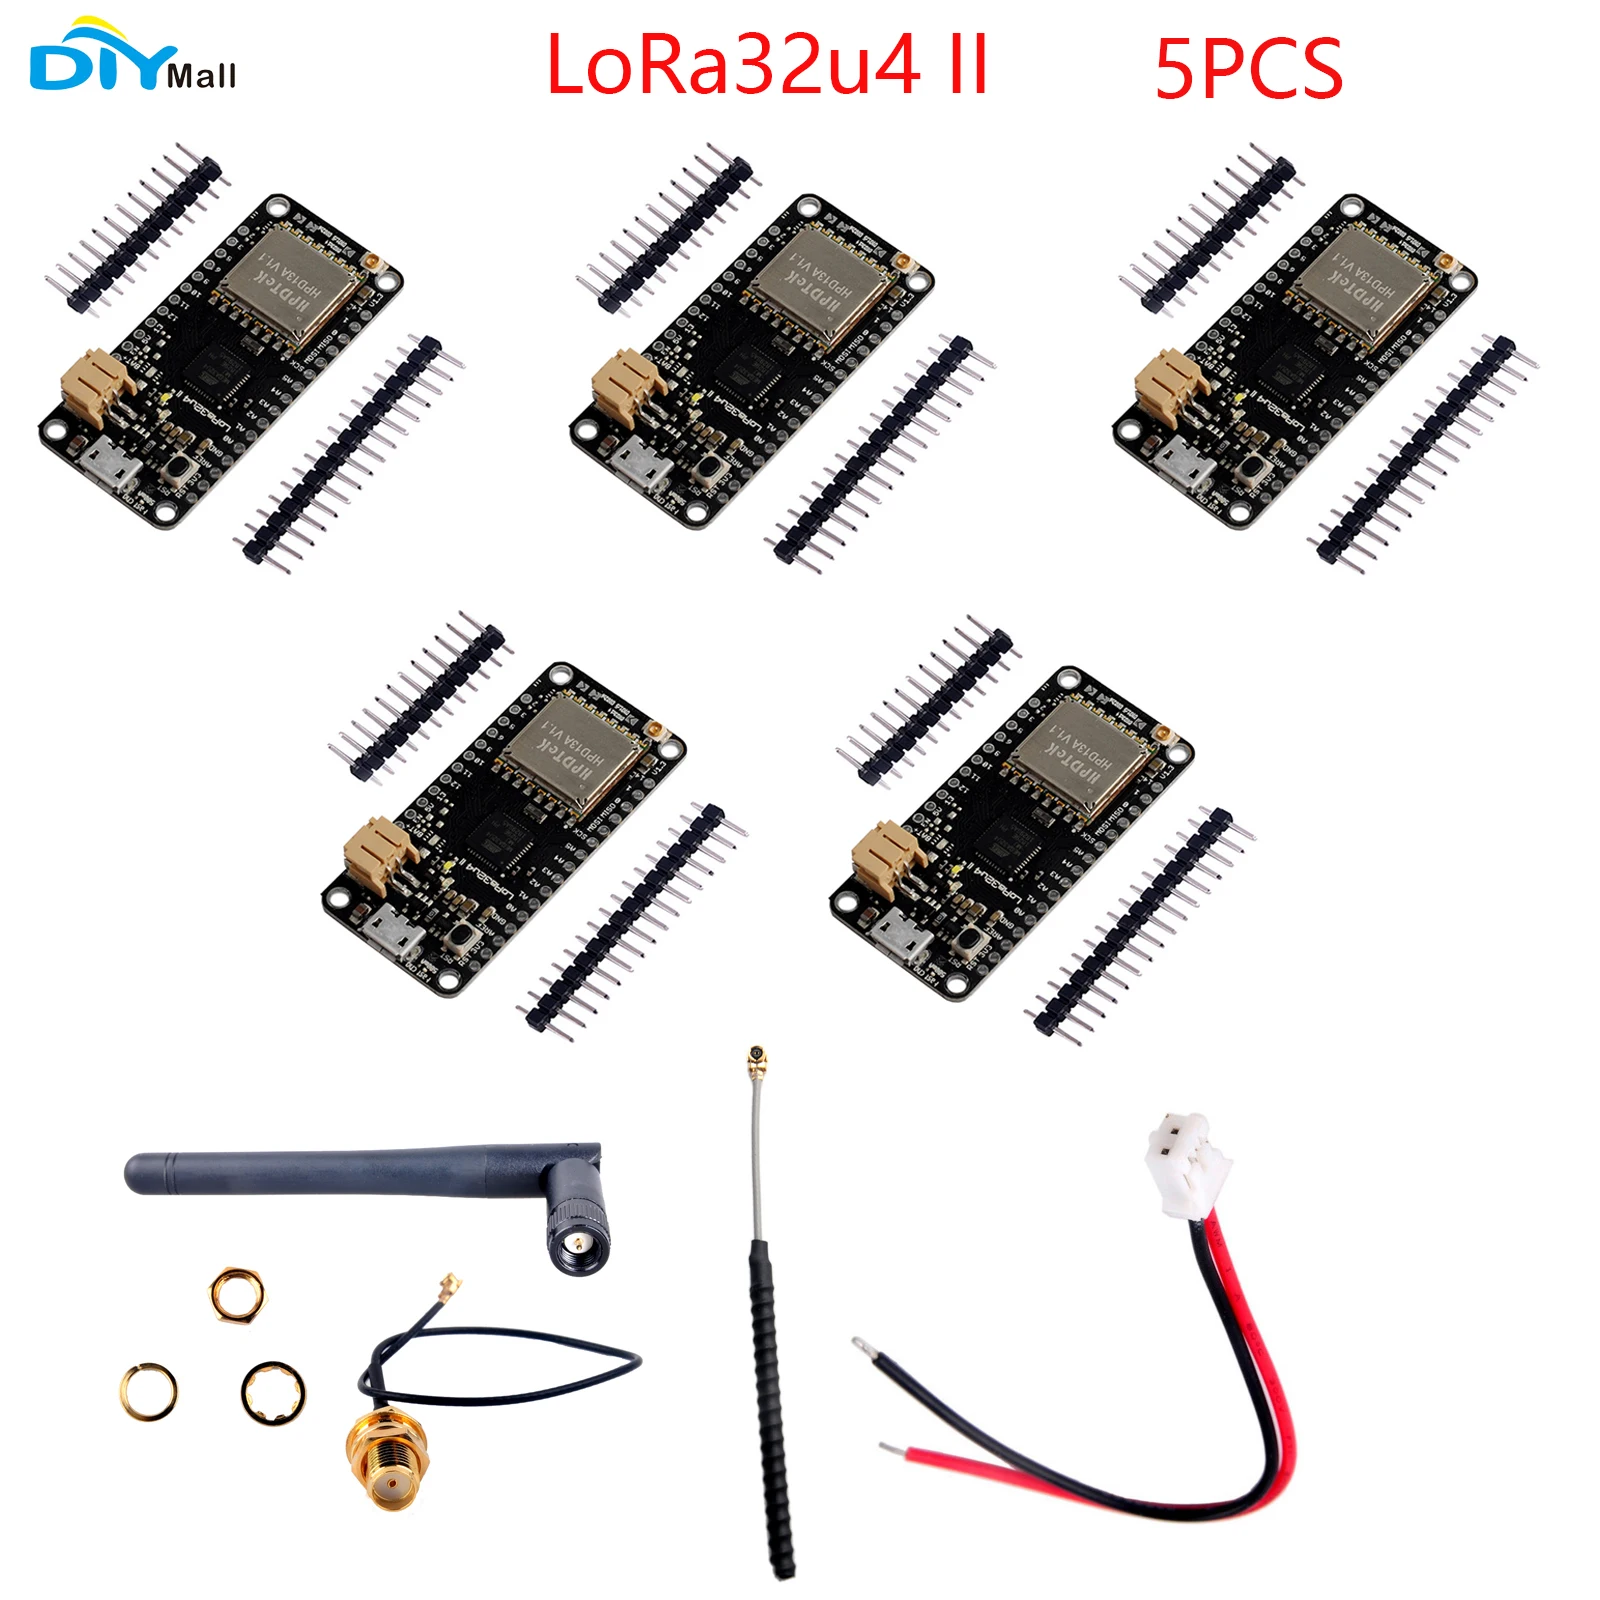 5PCS/Lot DIYmall LoRa32u4 II Lora Development Board Module LiPo Atmega328 SX1276 HPD13 868MHZ 915MHz lora32u4ii with Antenna